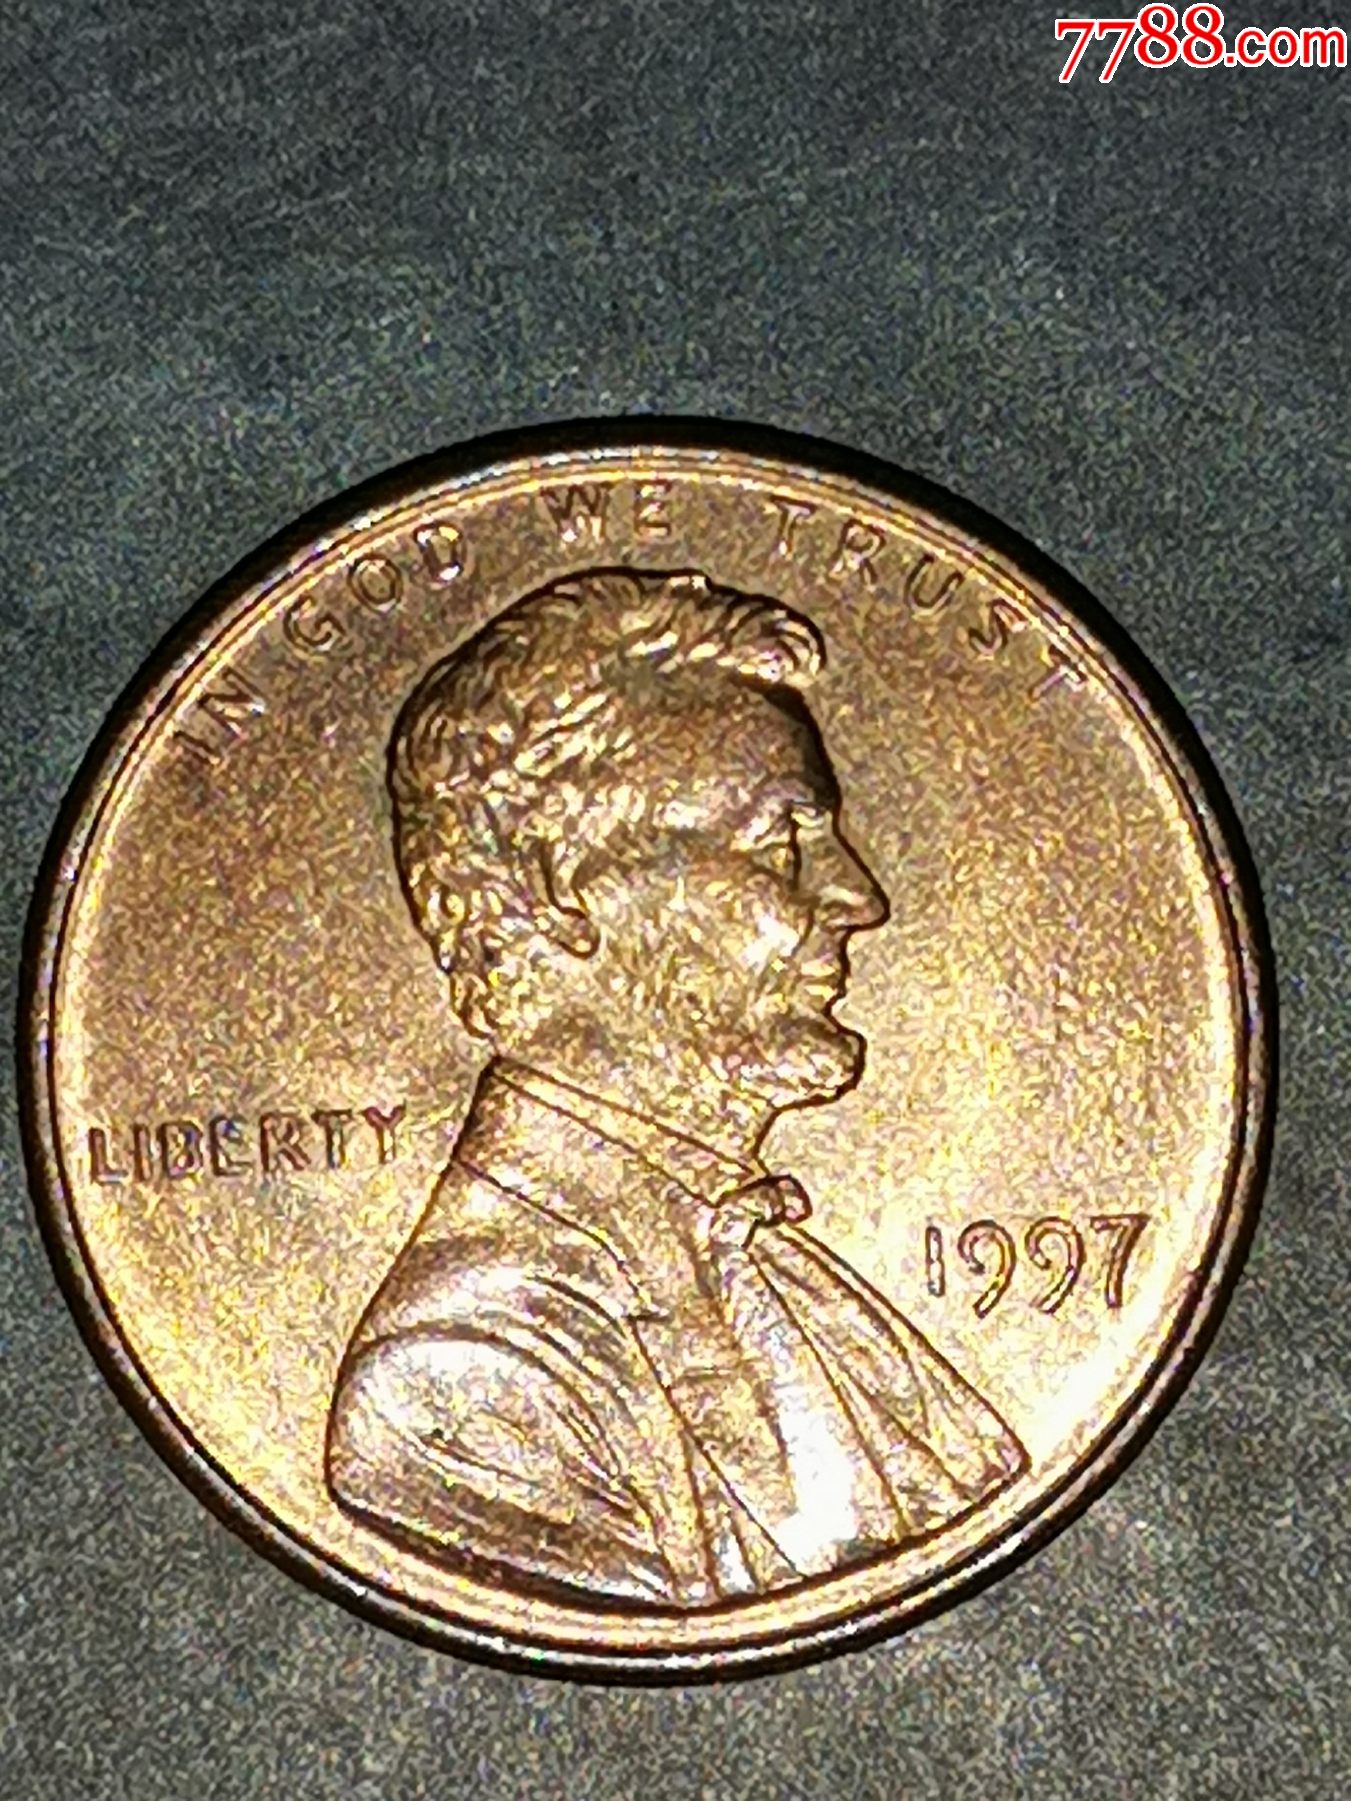 美国1997年1美分